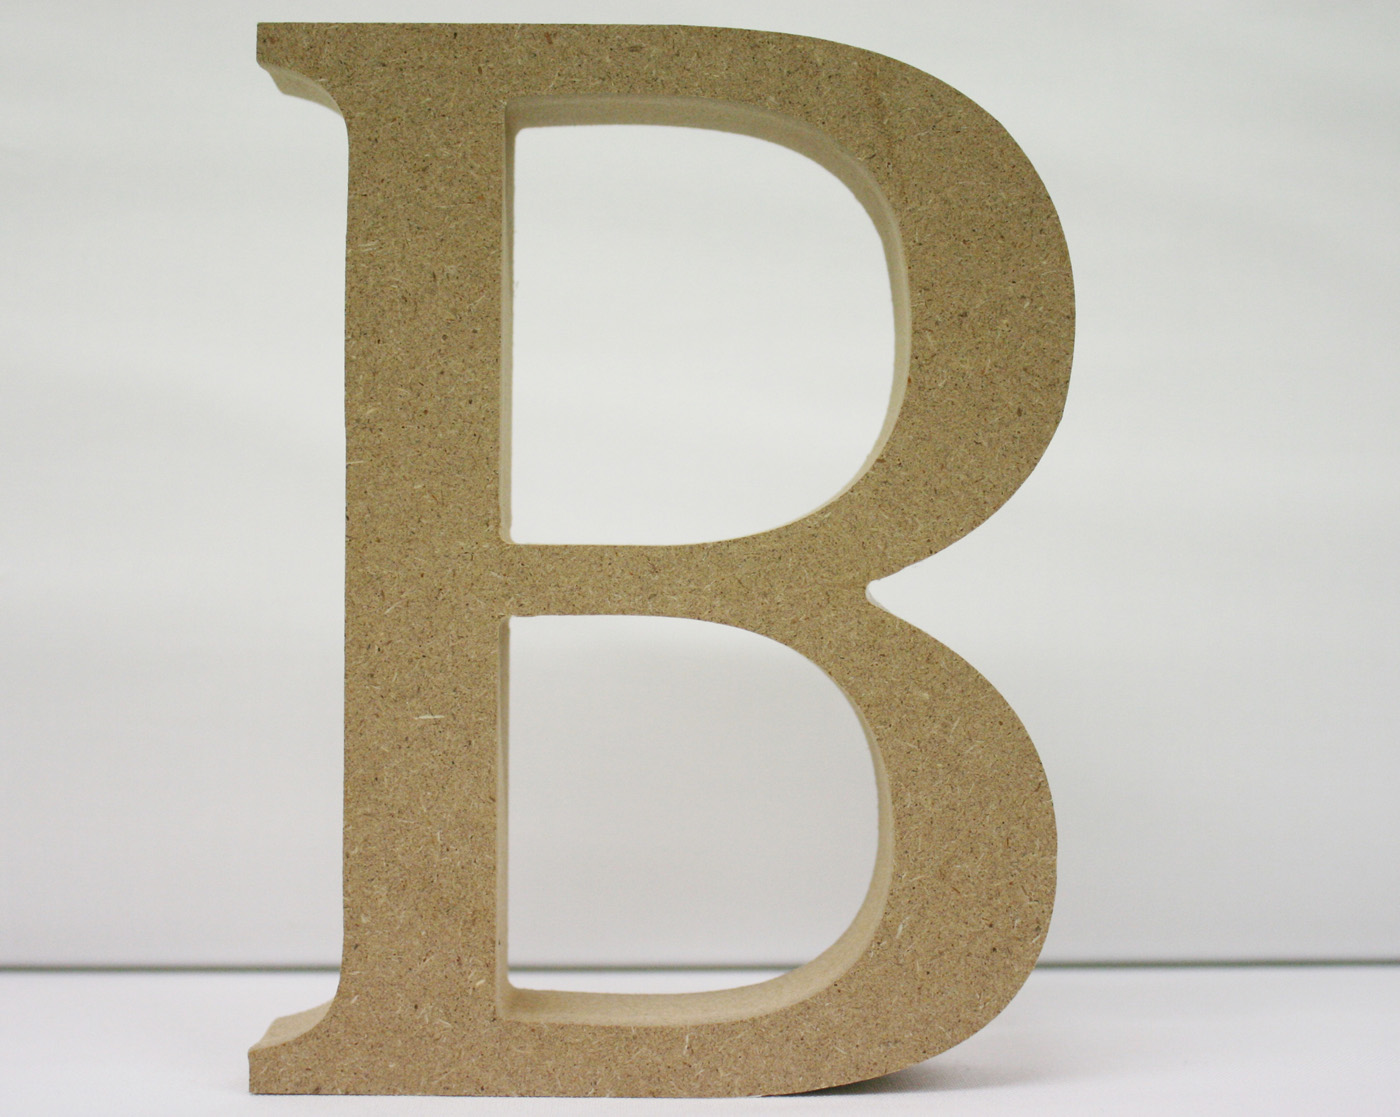 Wooden Letter B